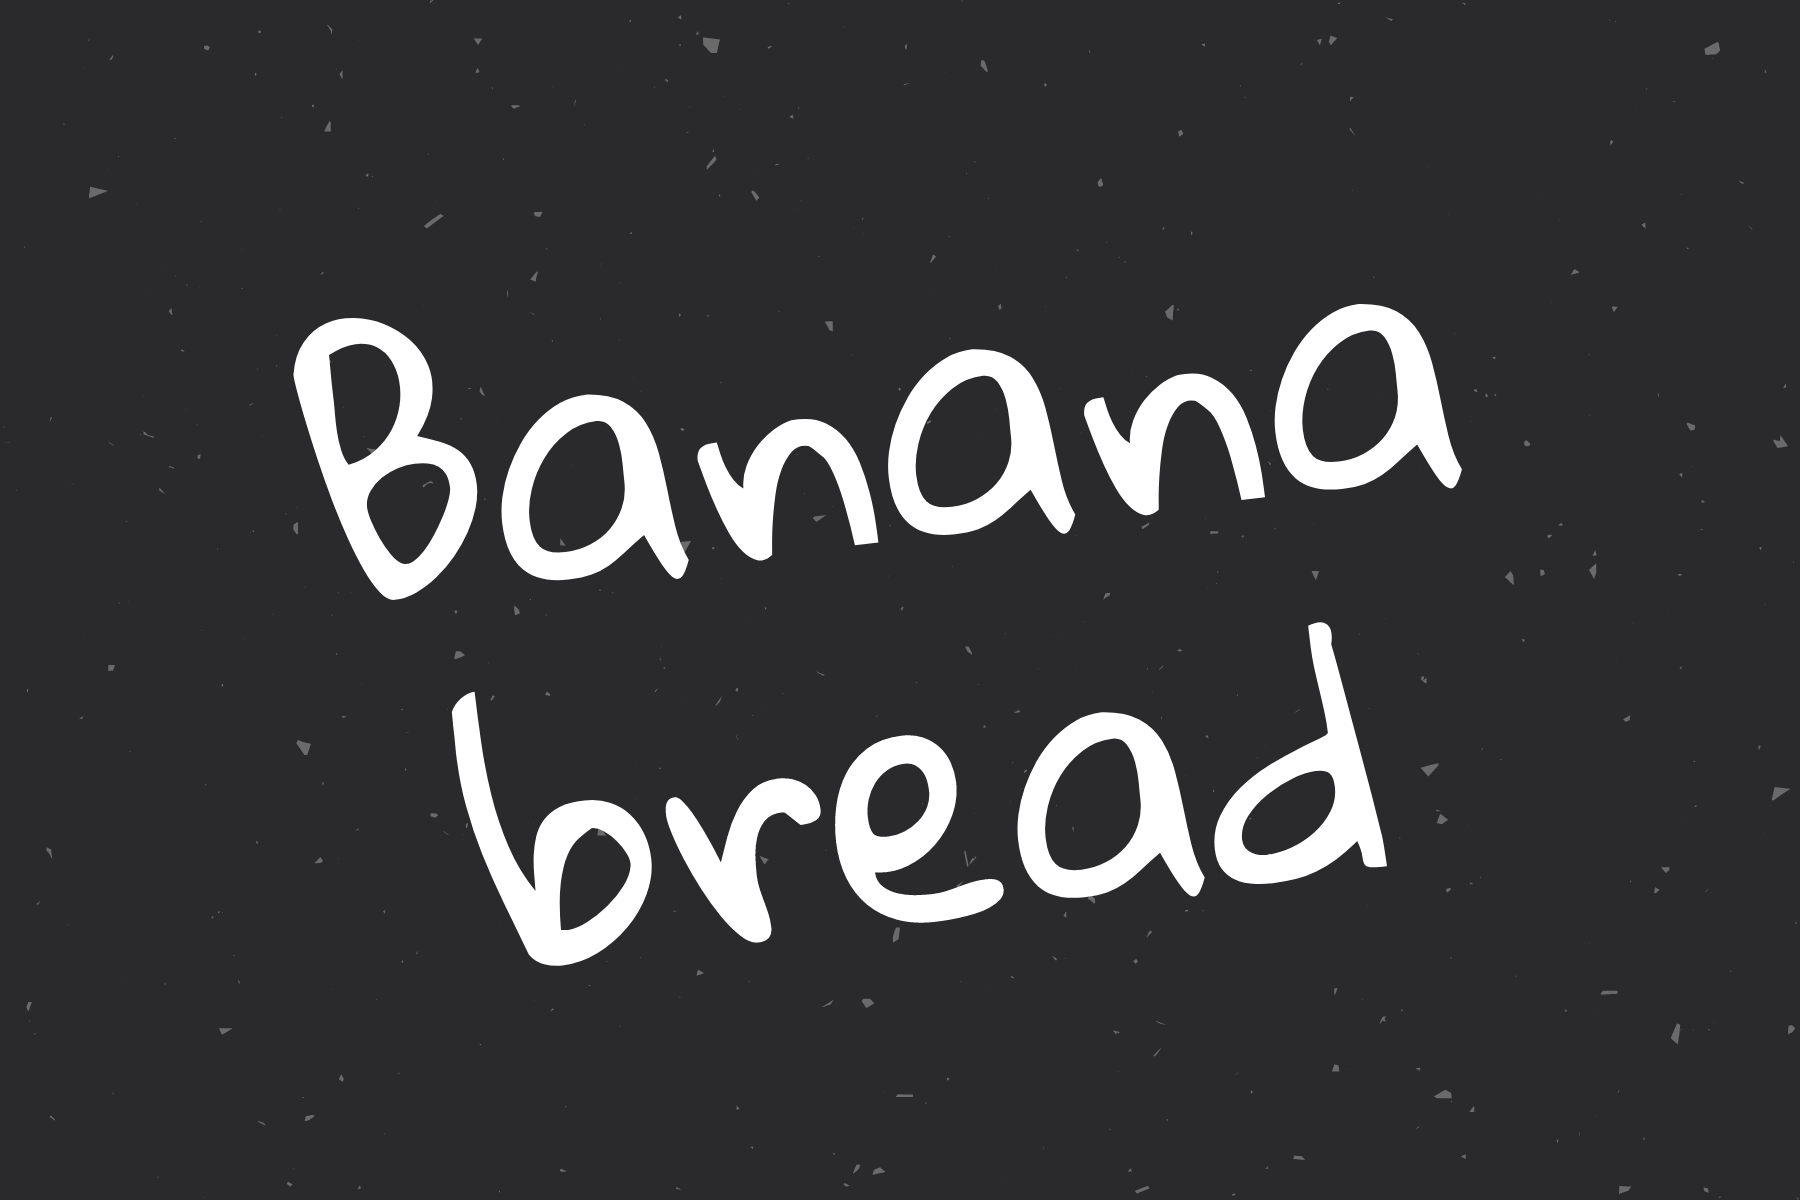 BANANA BREAD